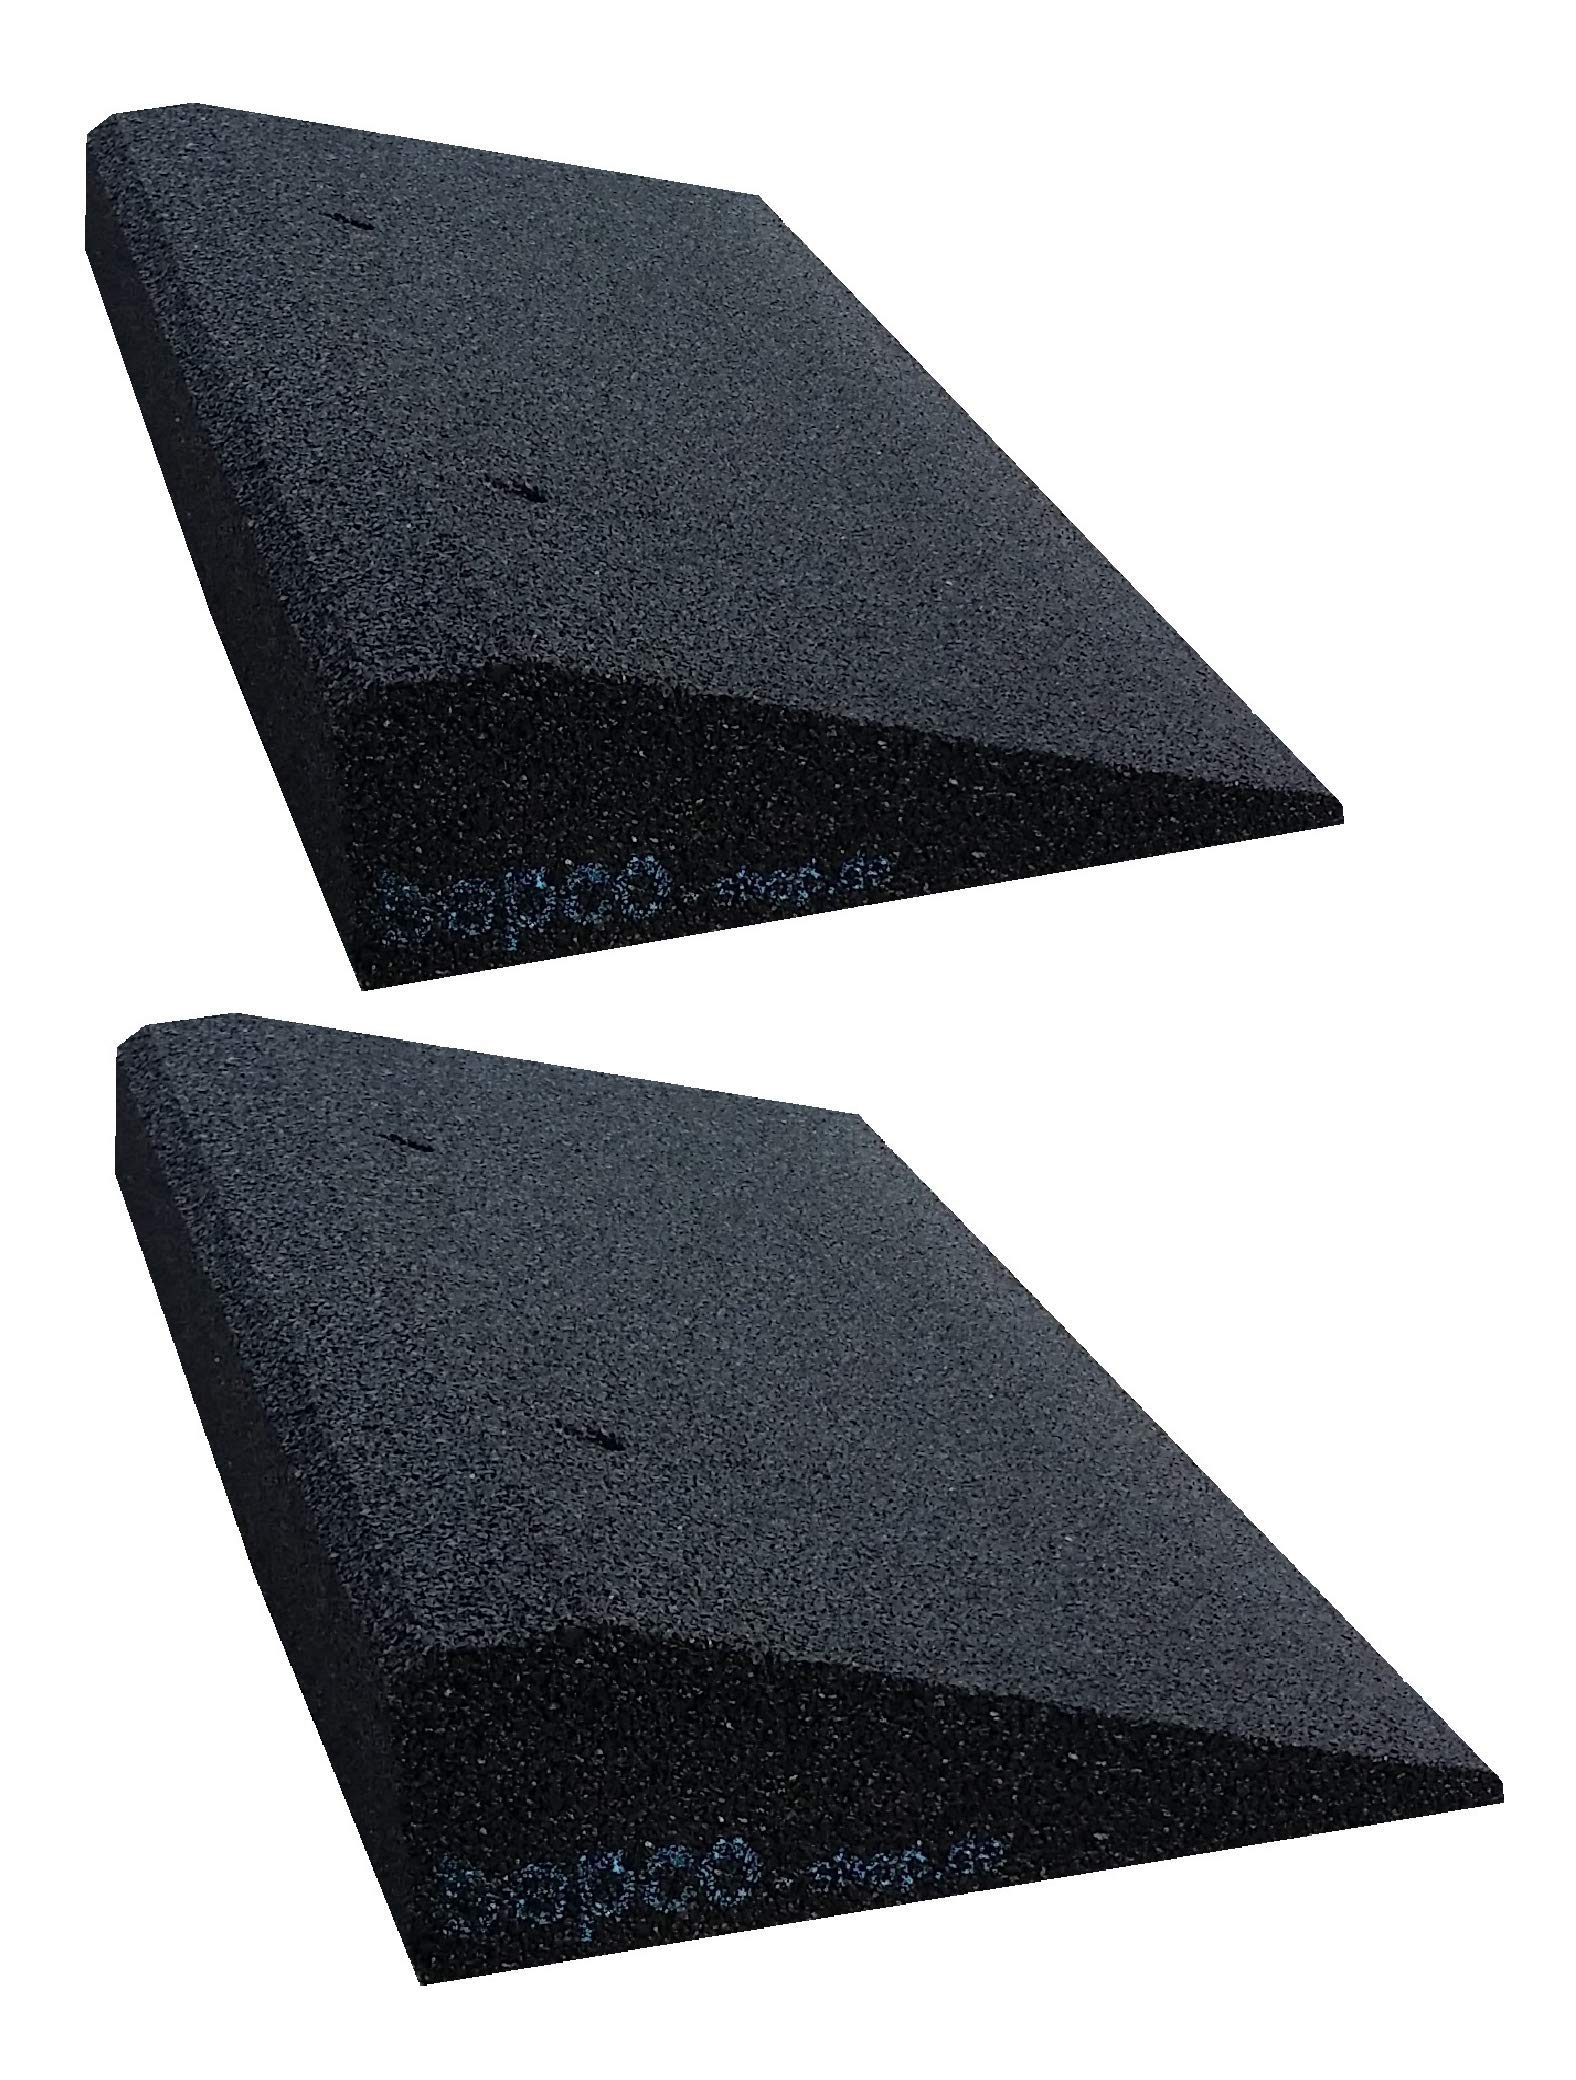 bepco Bordsteinkanten-Rampe-Set (2 Stück), LxBxH: 50 x 25 x 6 cm aus Gummi (schwarz) Auffahrrampe,Türschwellenrampe, mit eingelagerten Unterlegscheiben zur Befestigung